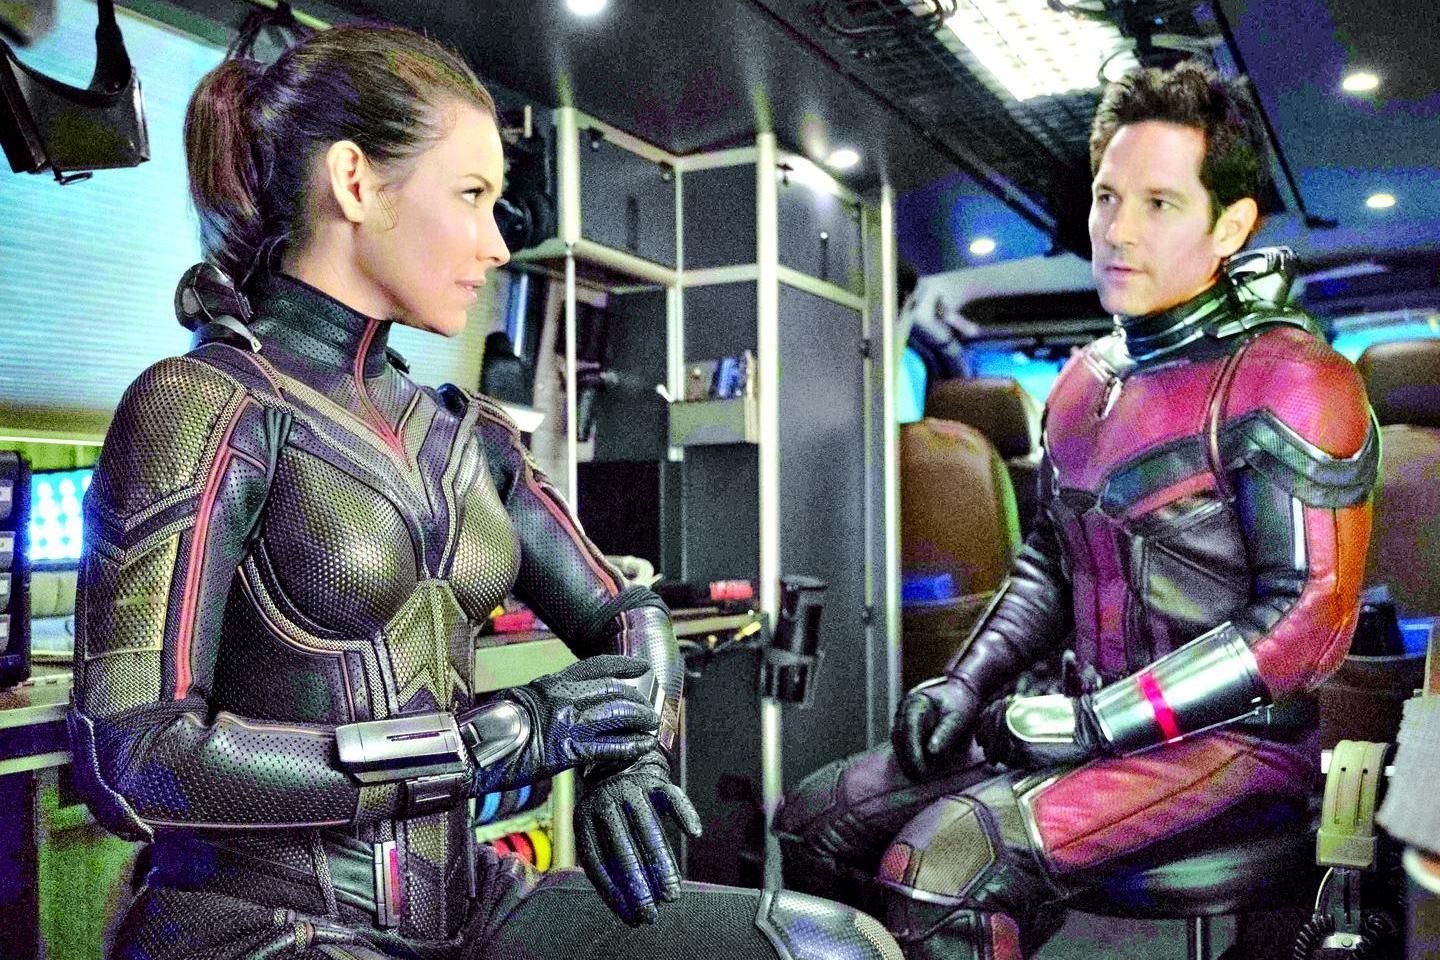 O que Homem-Formiga 3 diz sobre o futuro da Marvel no cinema